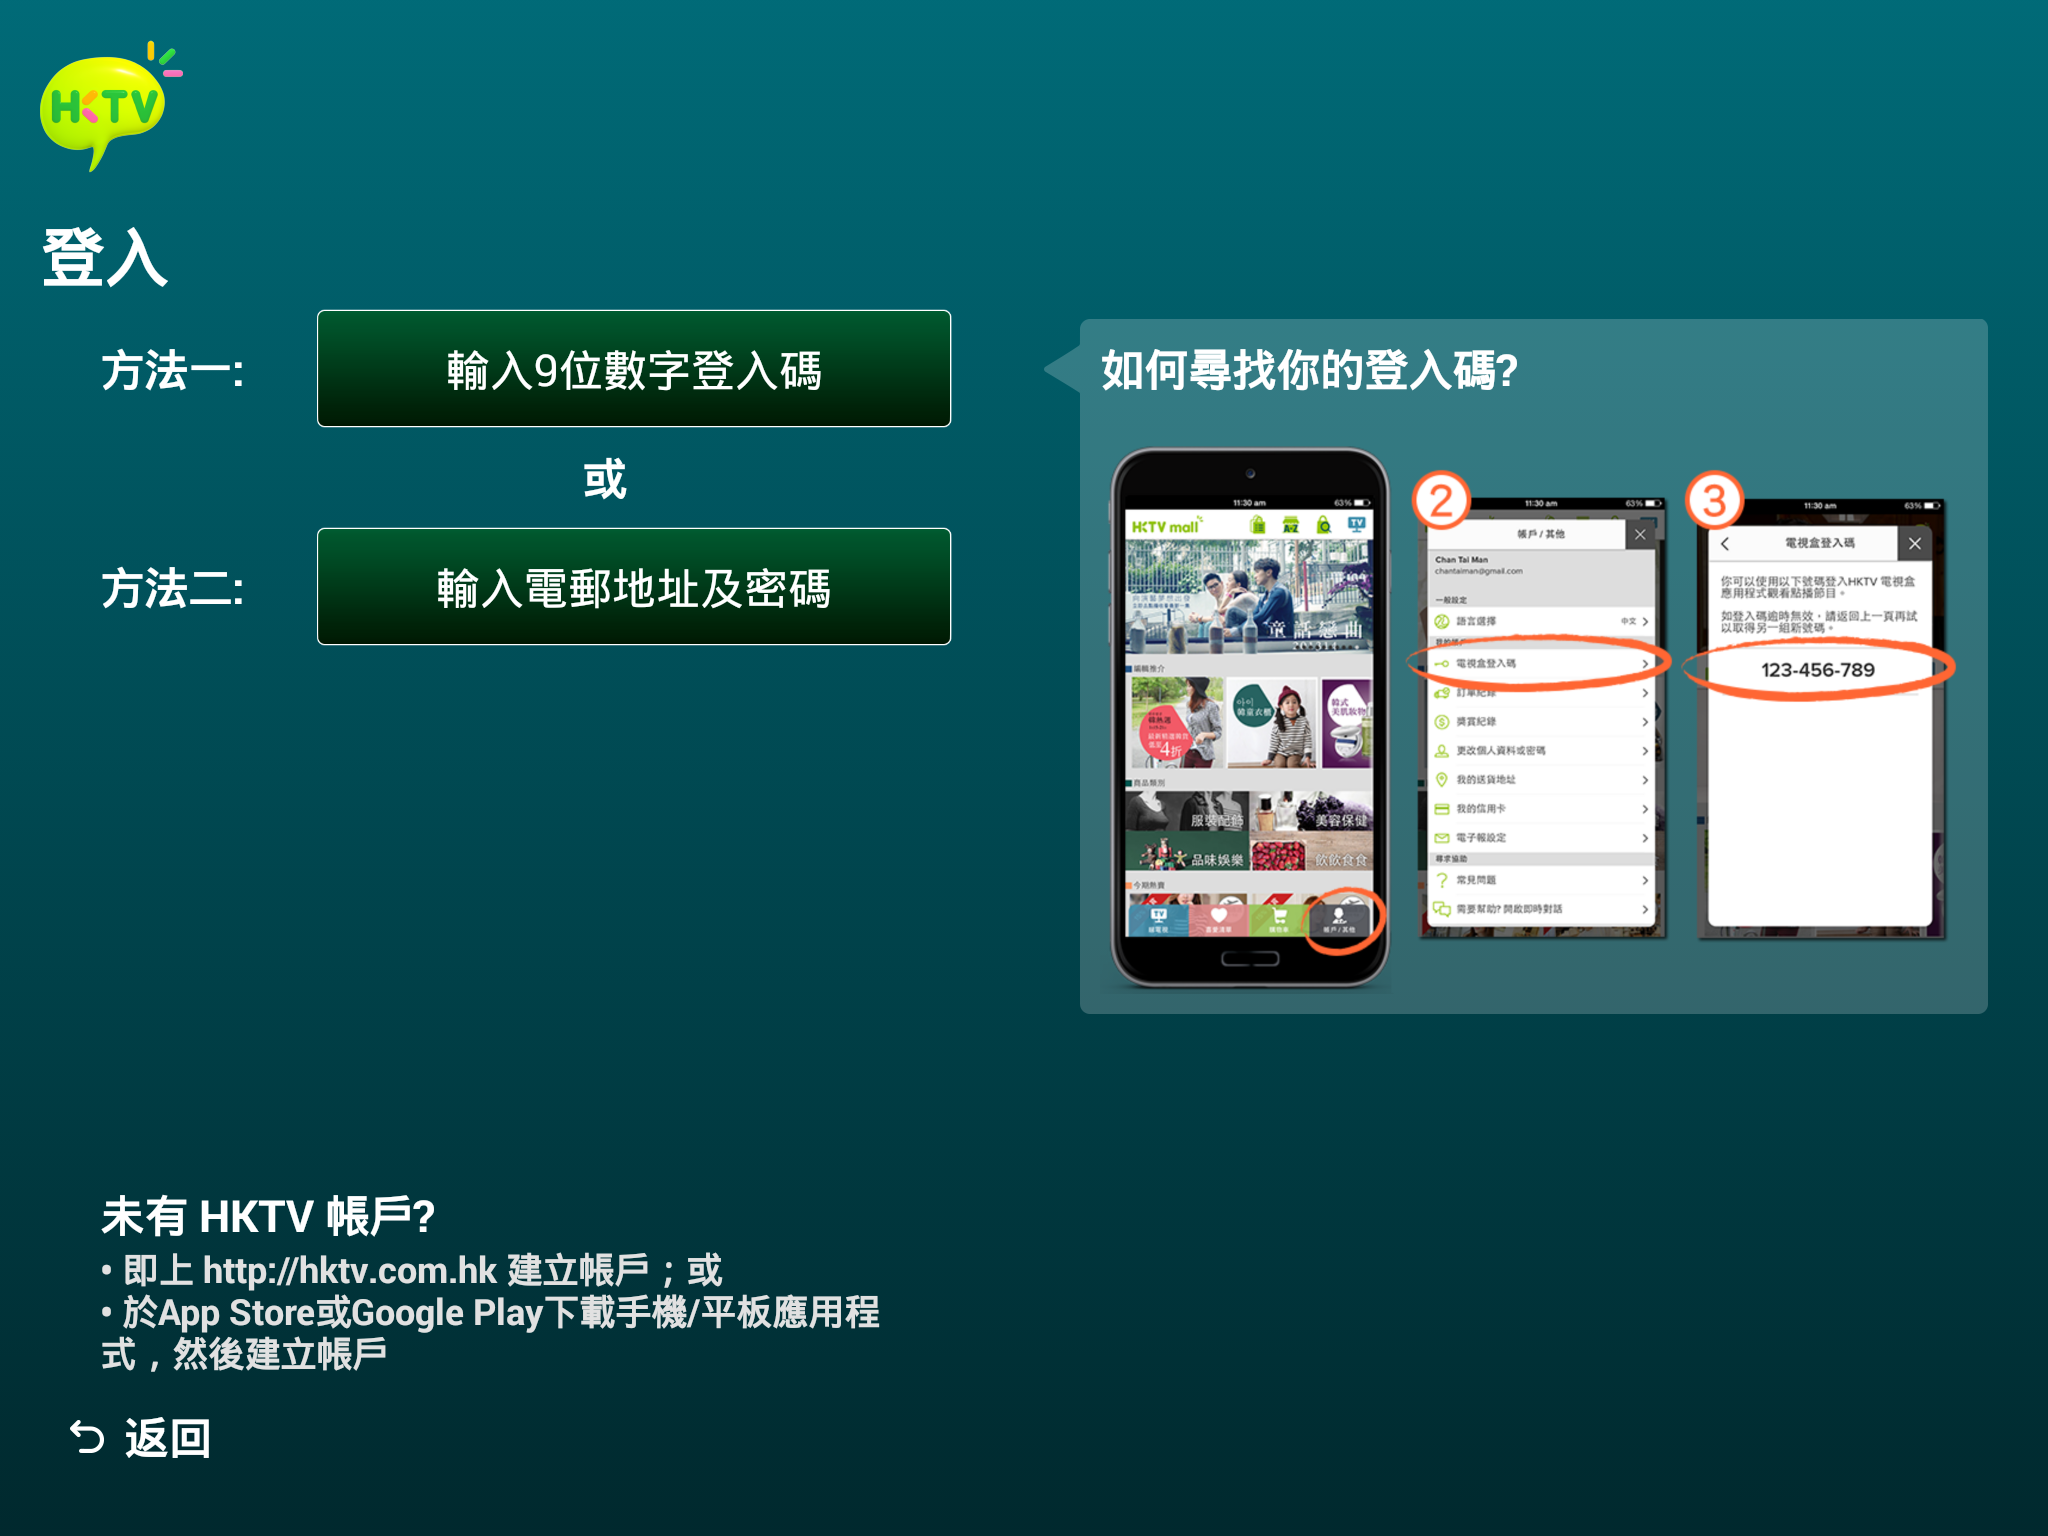 hktv-app-tv-choose-play-apk_02